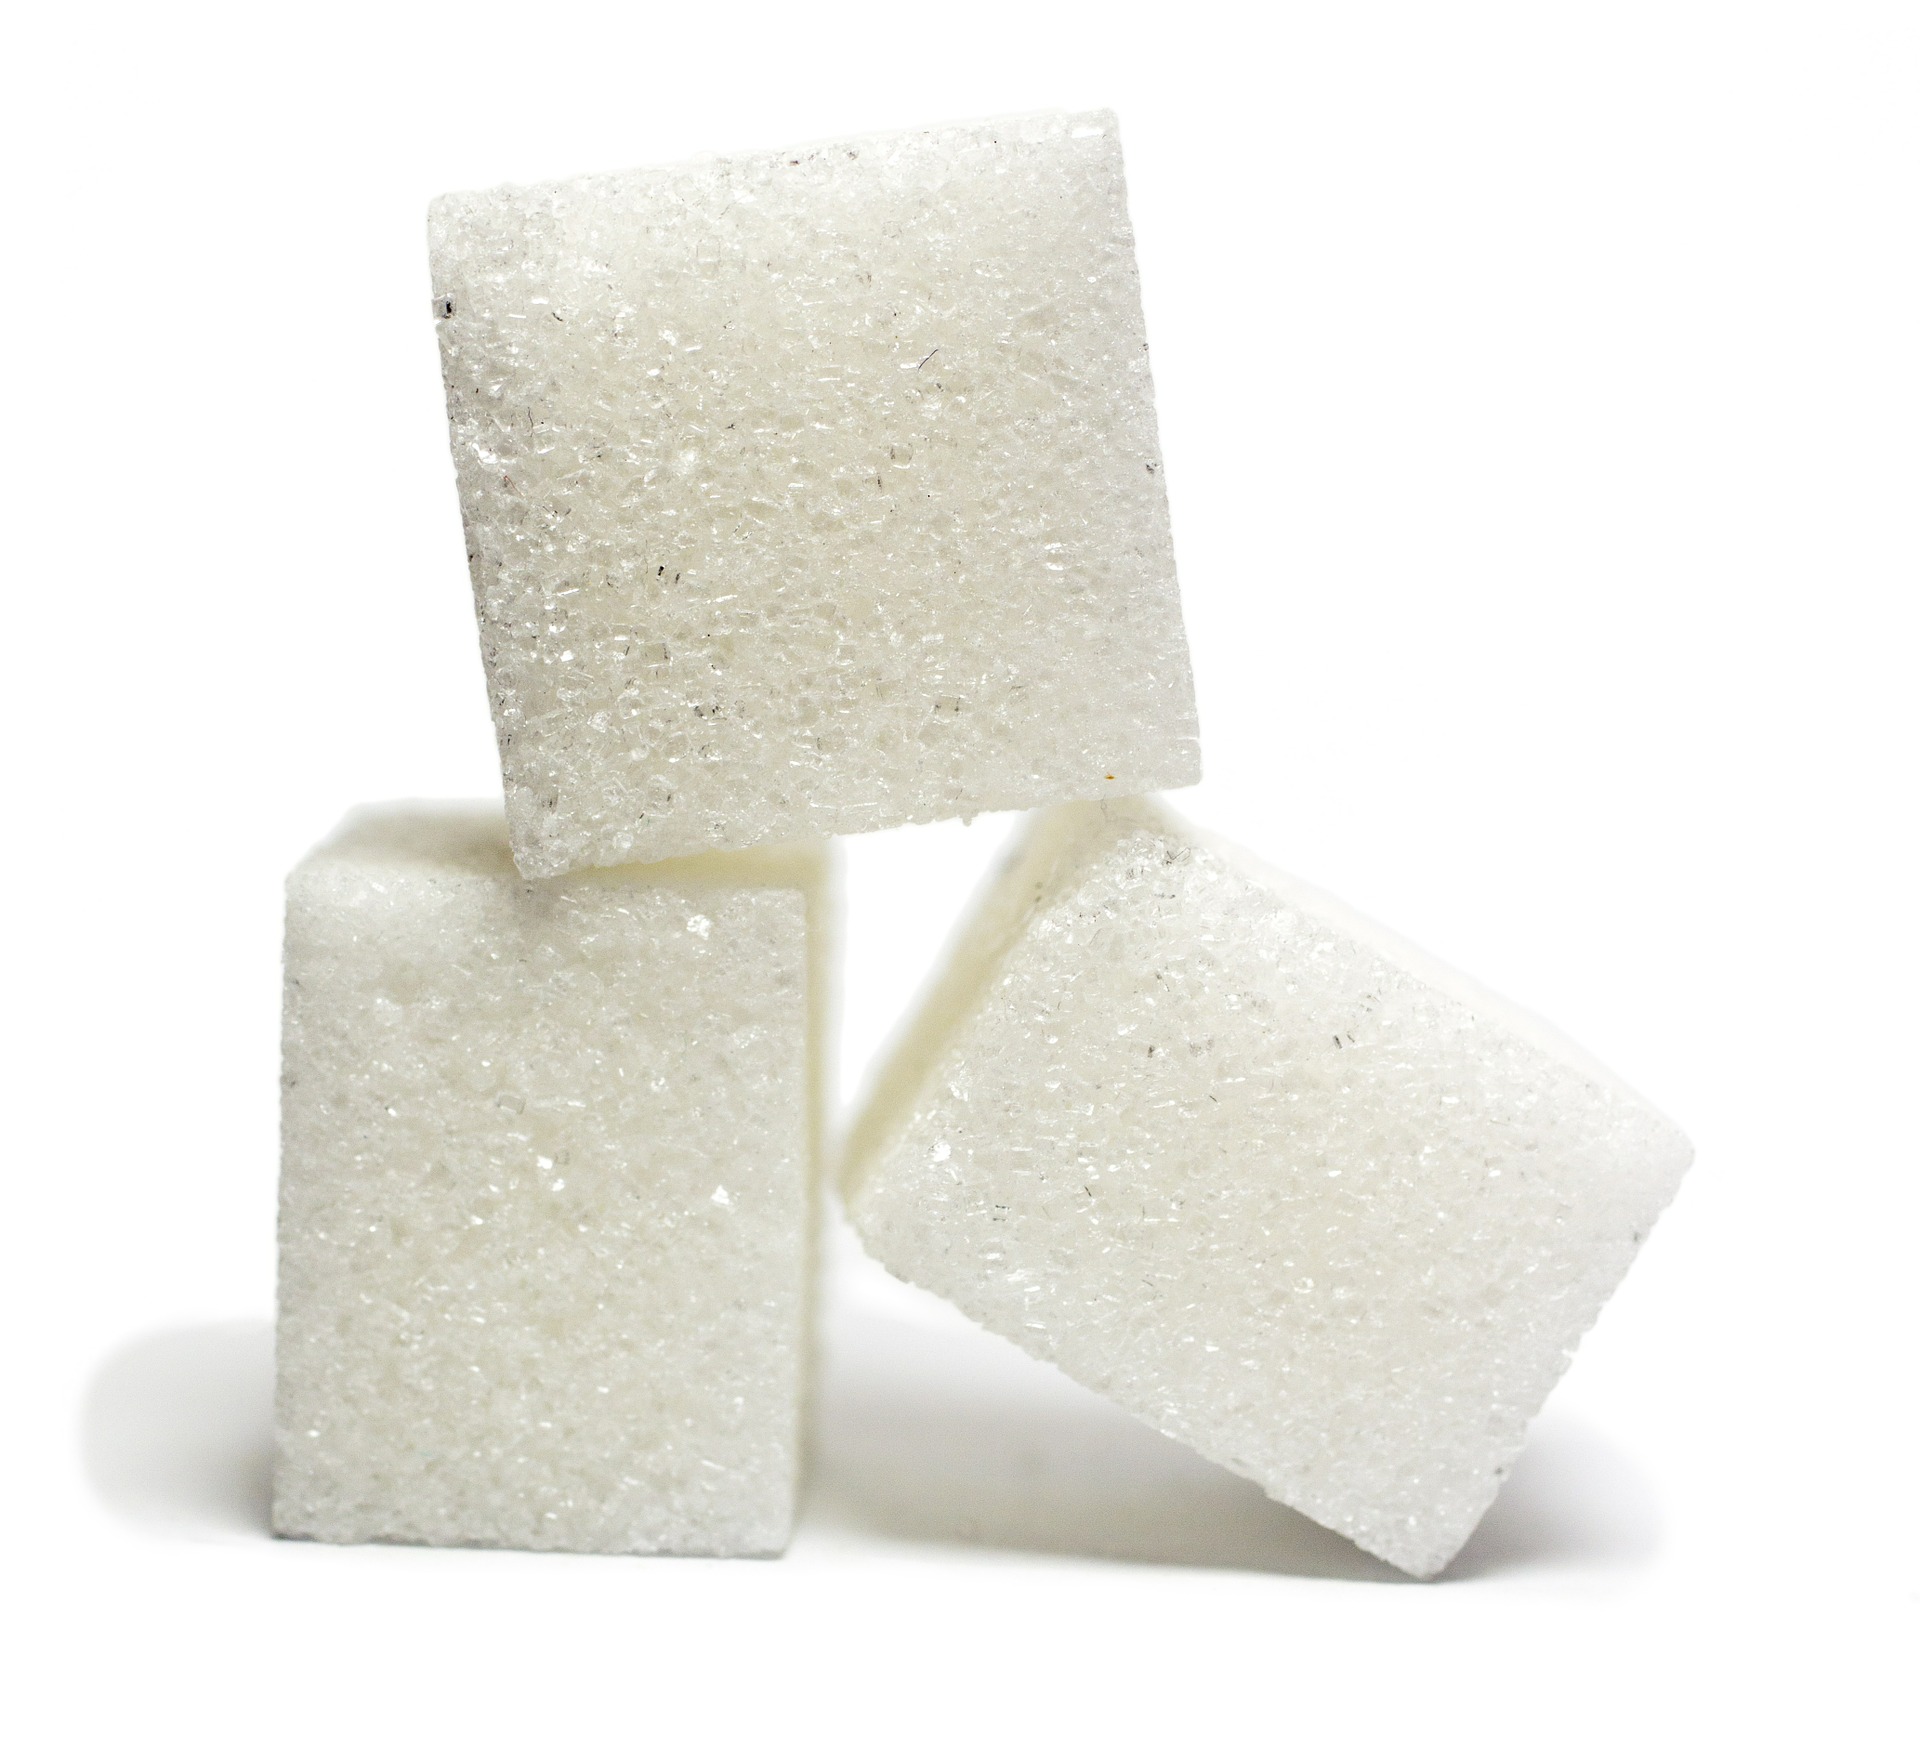 Indicador do açúcar cai quase 10% em fevereiro